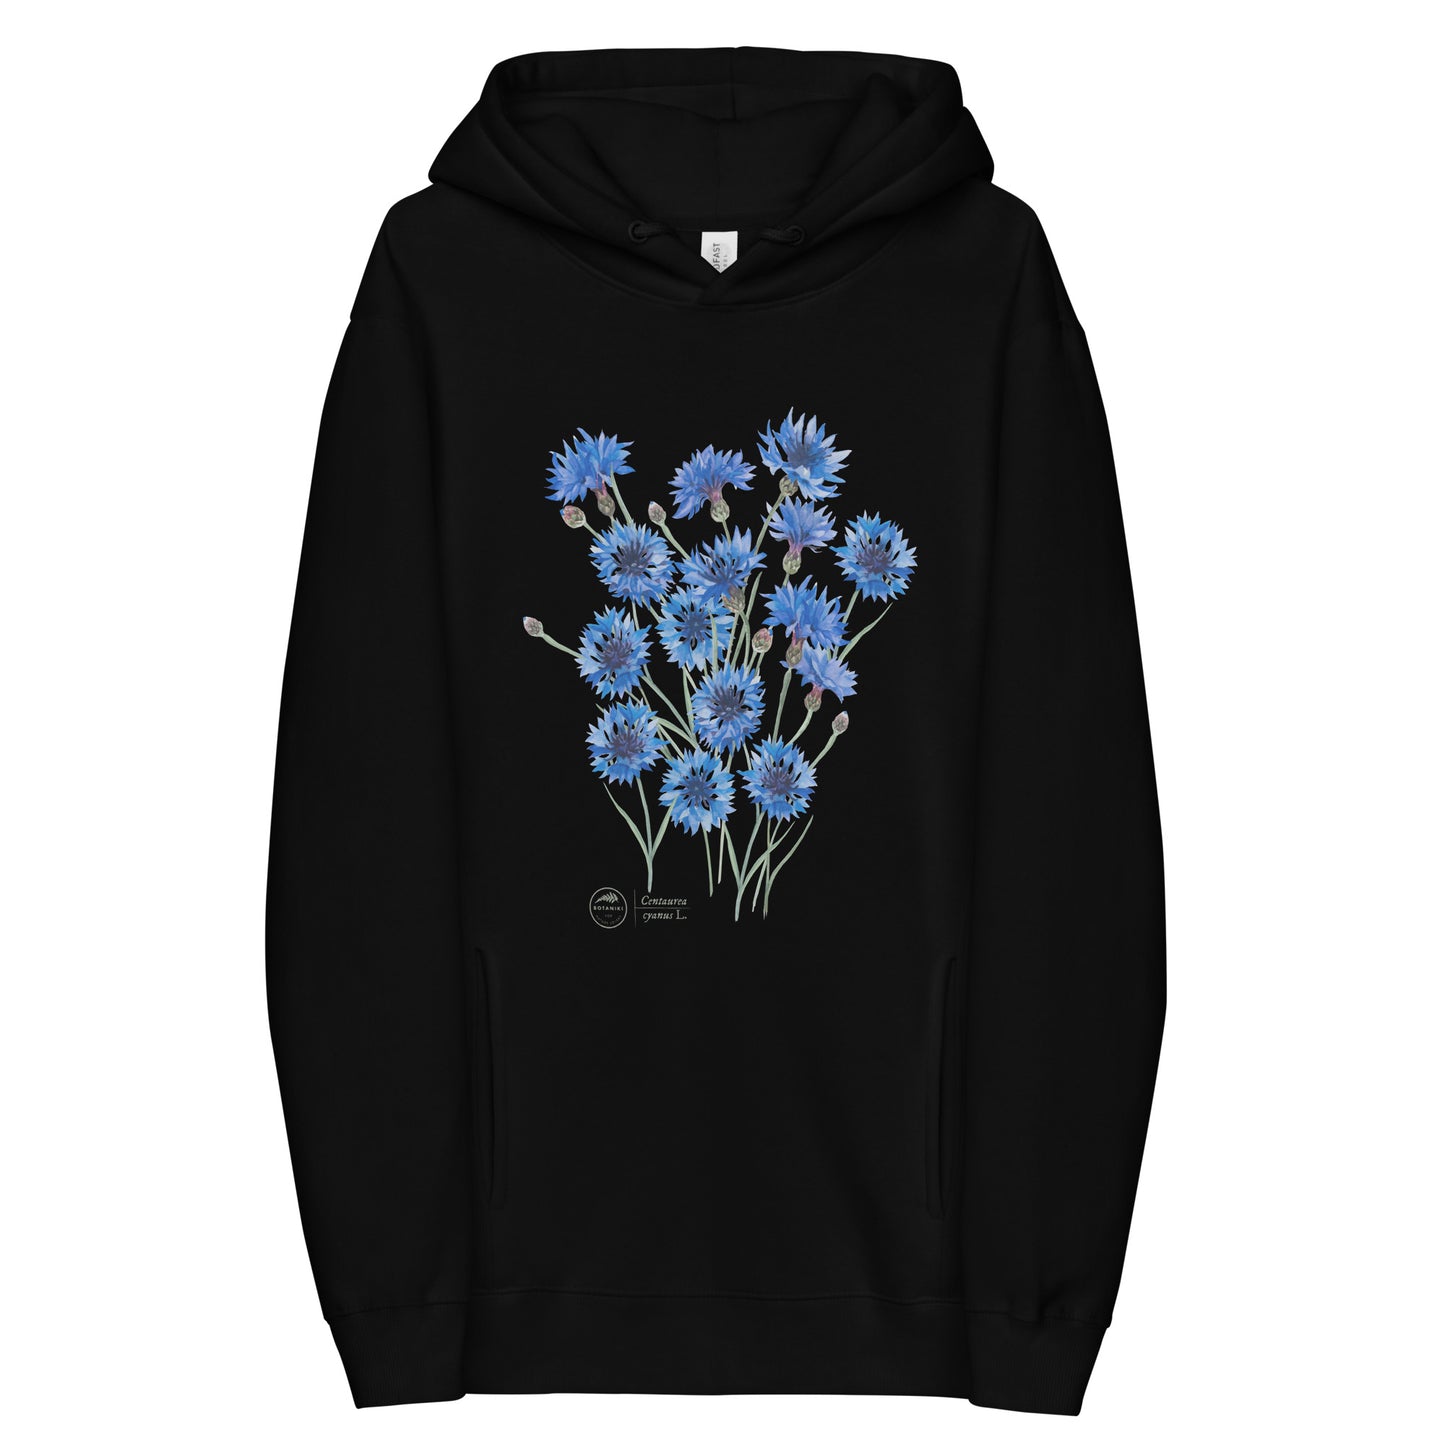 Unisex fashion hoodie - Cornflower